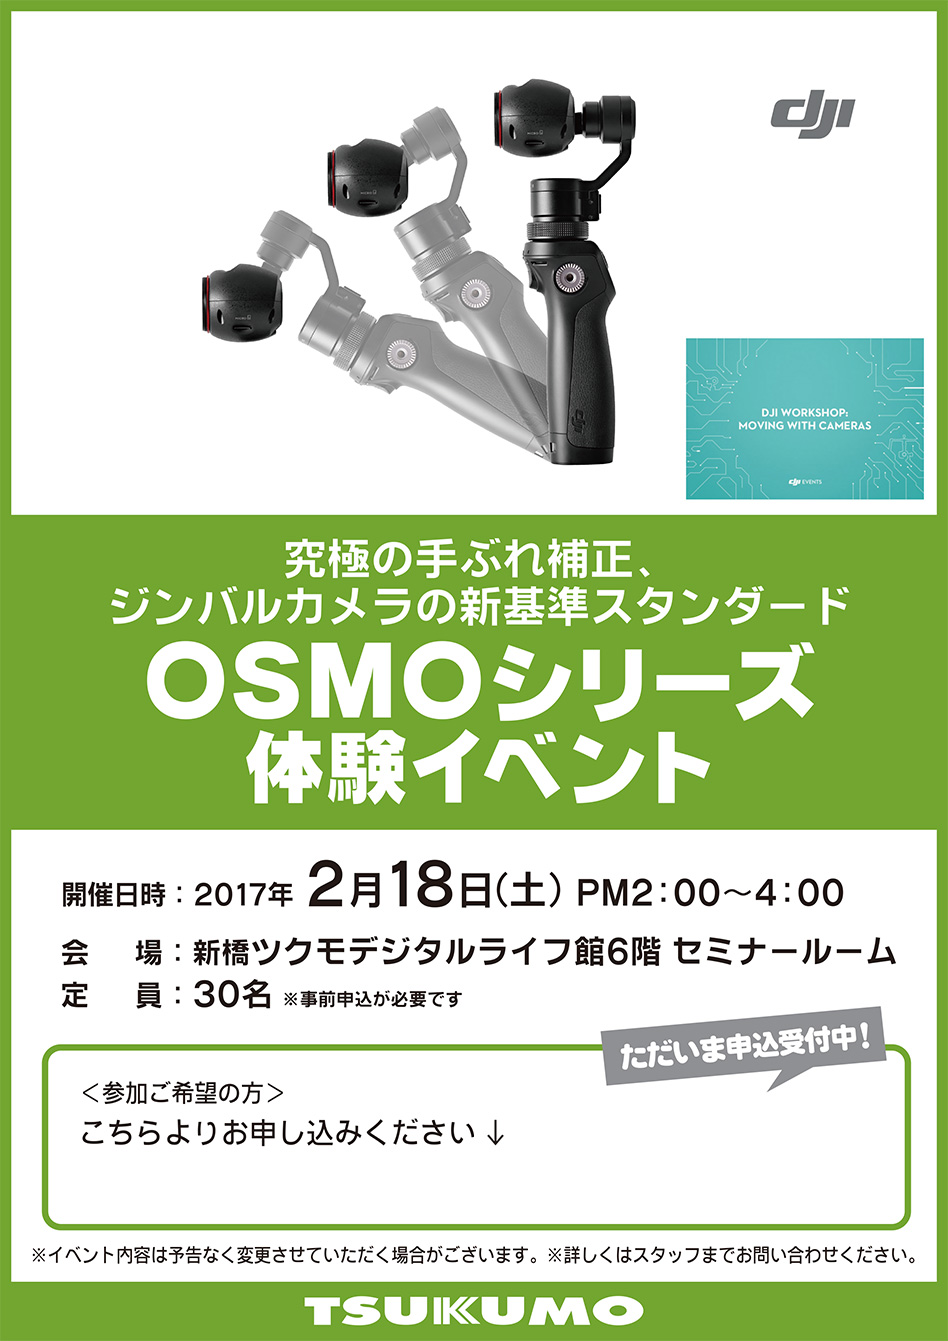 DJI OSMOシリーズ 体験イベント